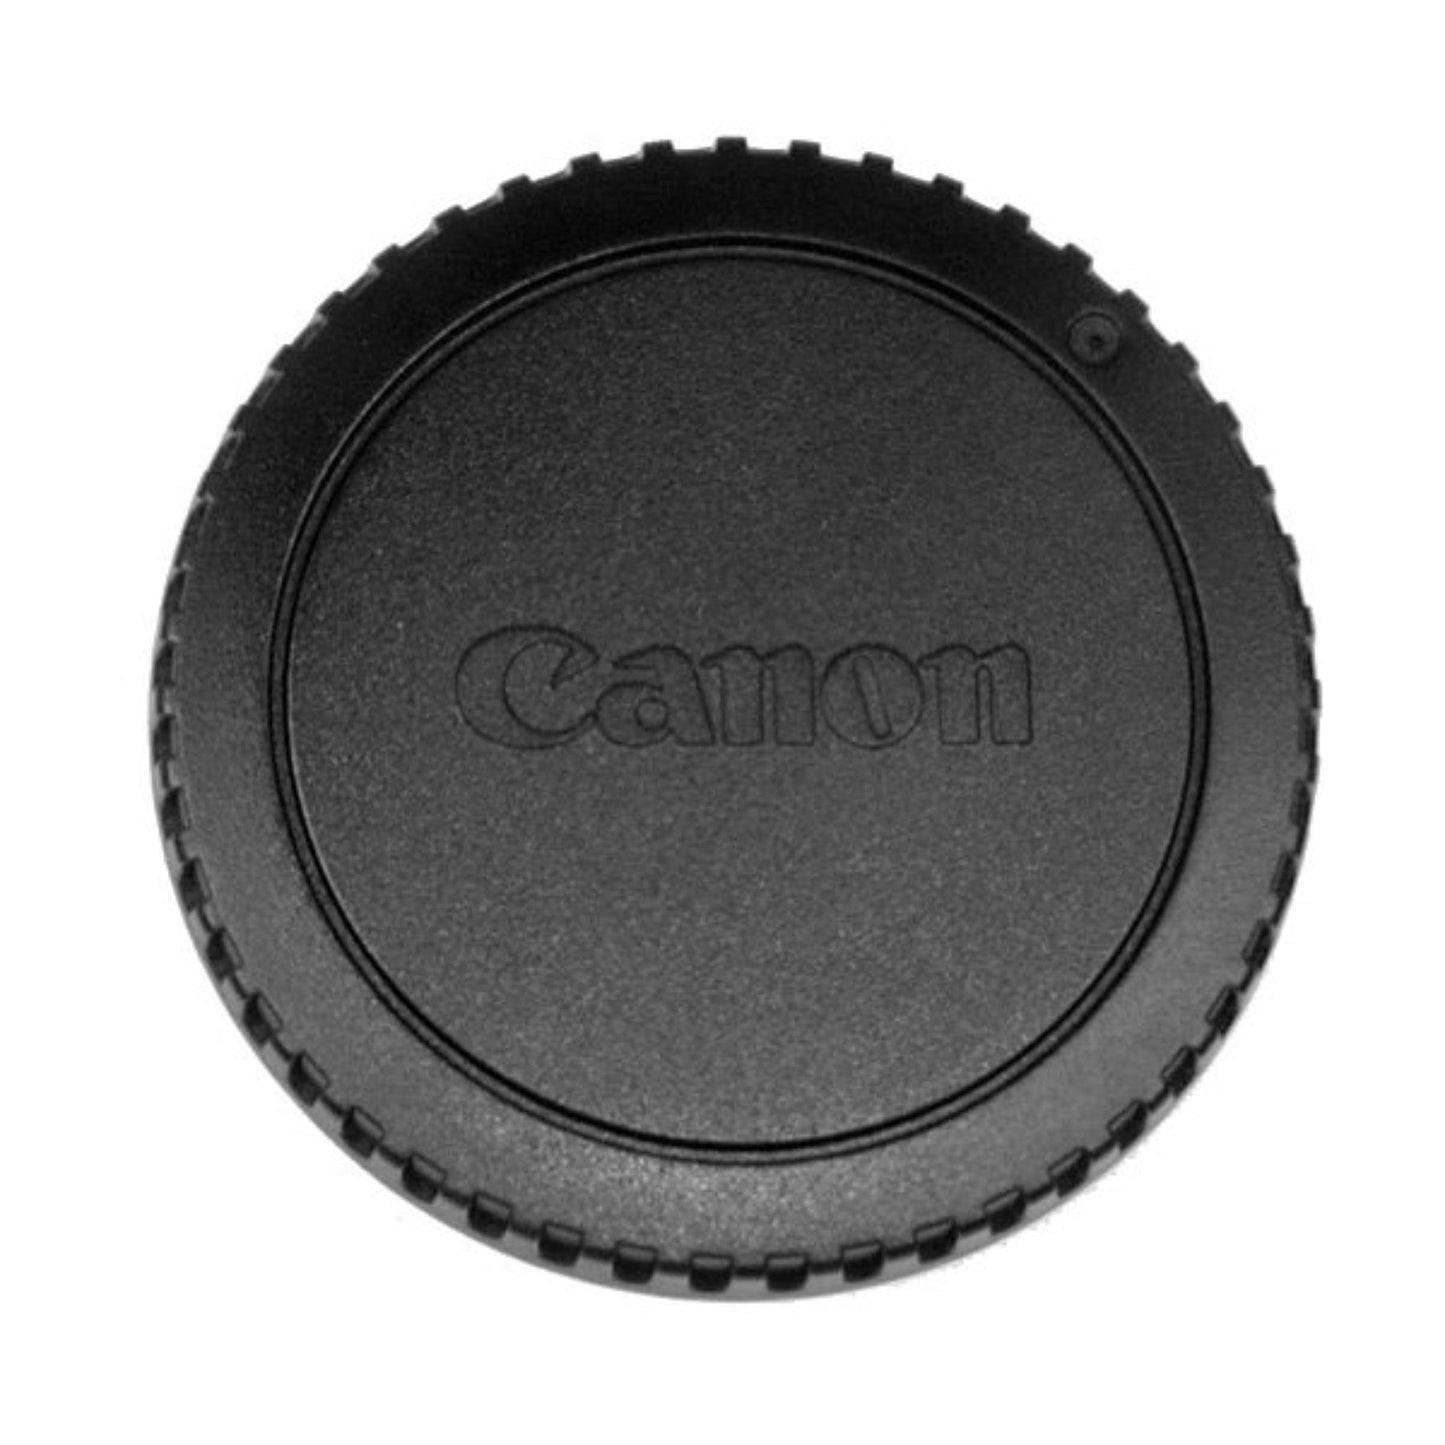 Buy Canon Body Cap | Topic Store